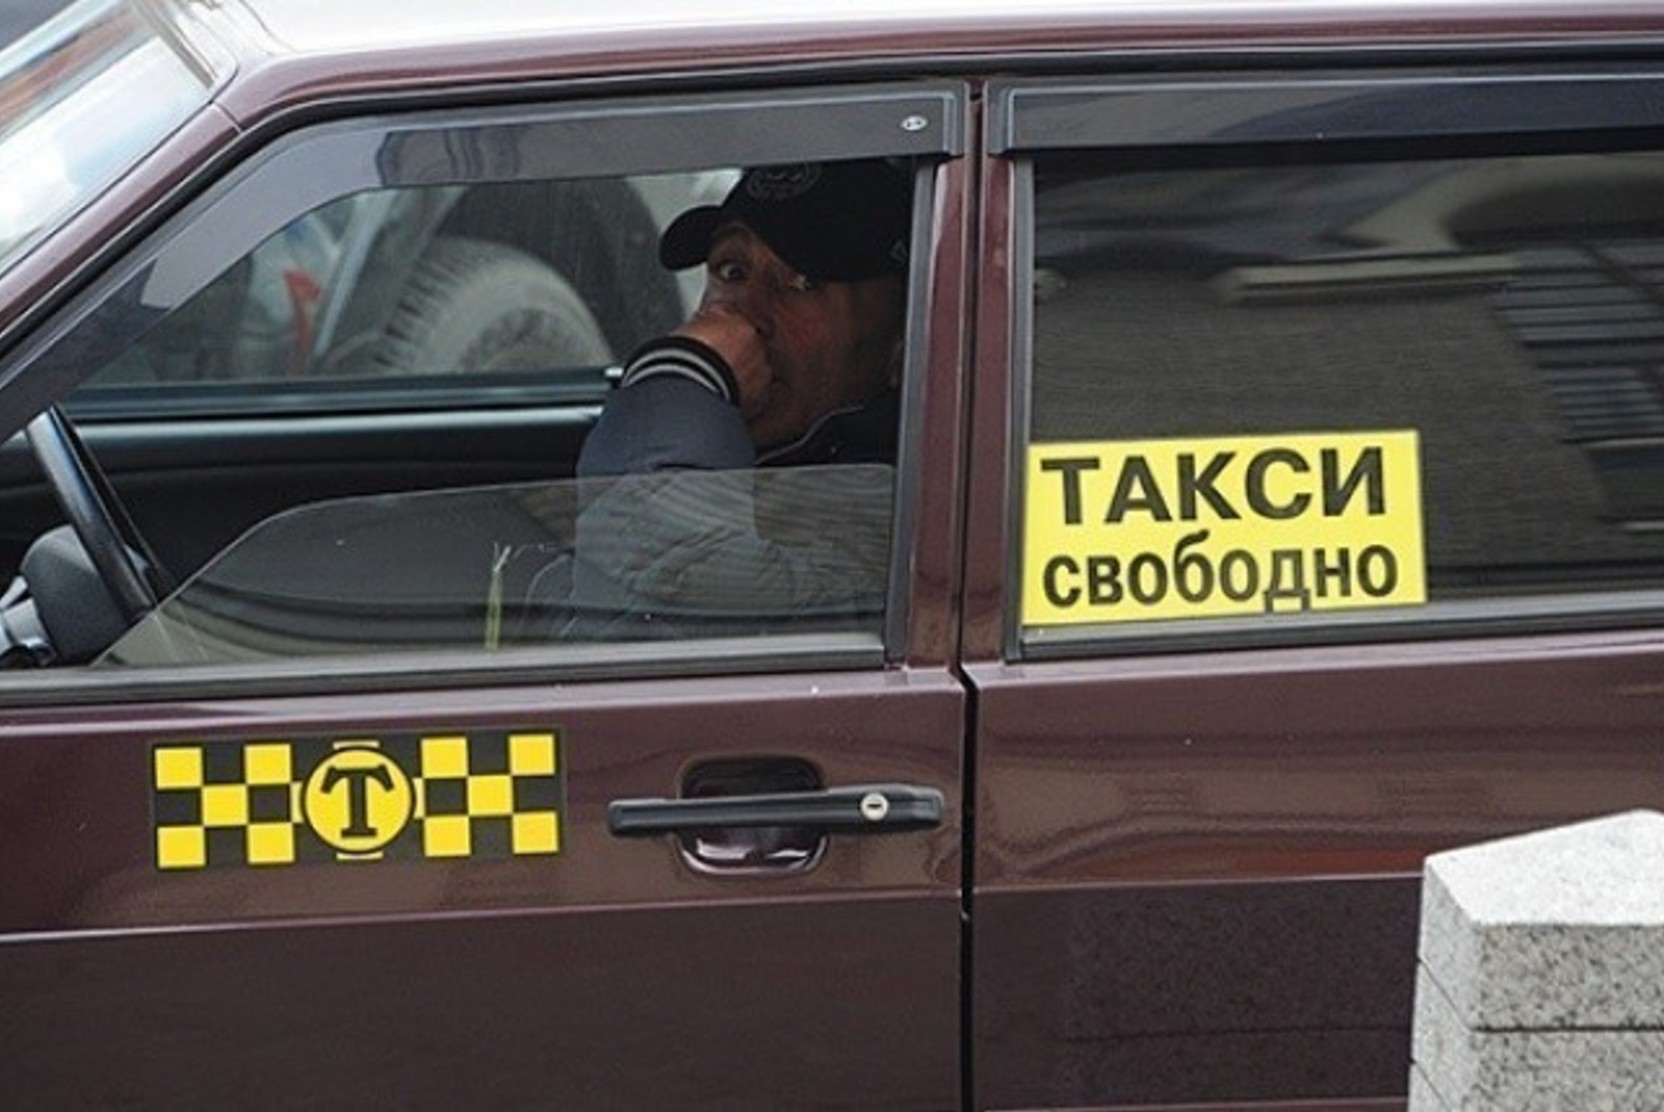 Челябинским властям посоветовали не выгонять из такси водителей-мигрантов